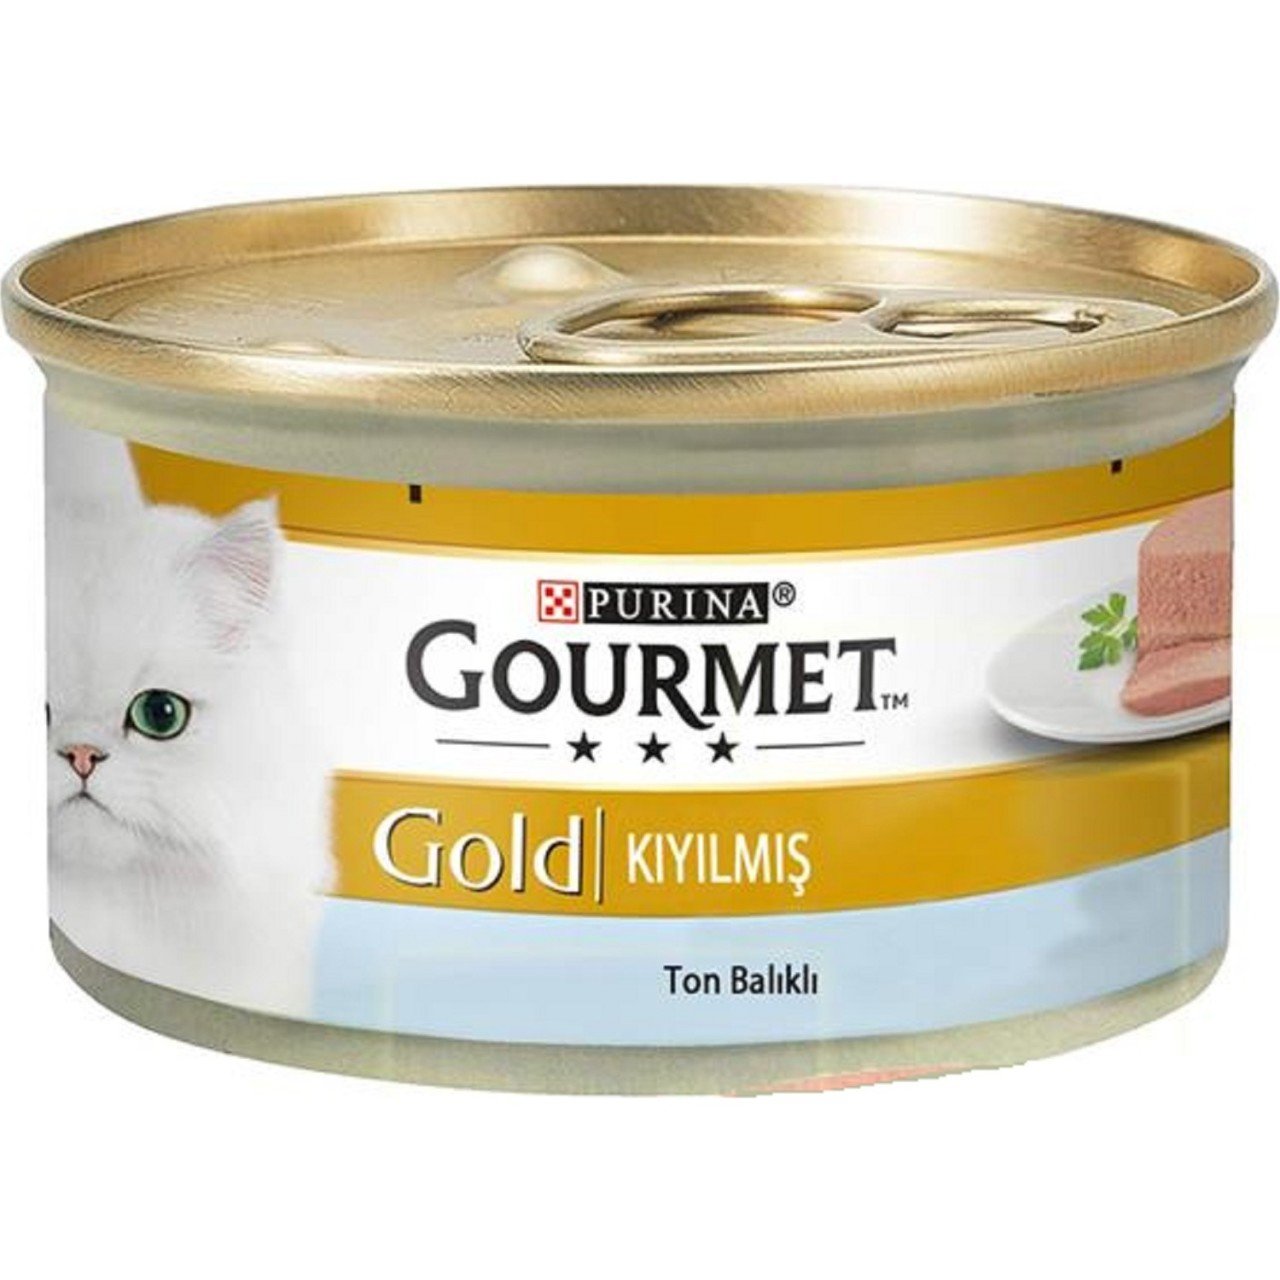 Gourmet Gold Kıyılmış(Pate)Ton Balıklı Konserve Kedi Maması 85 Gr(stt.02/2025)